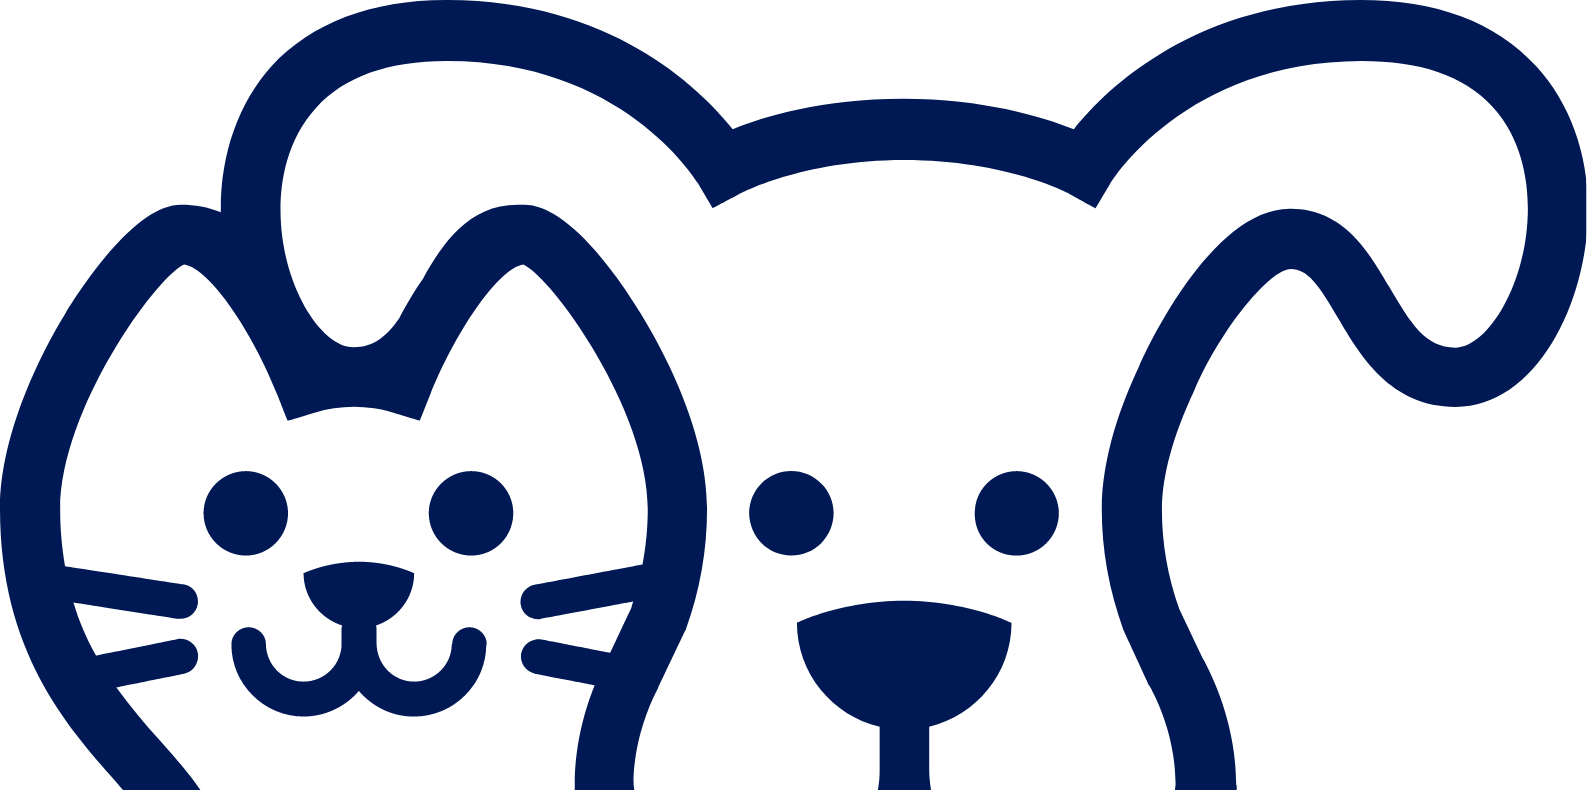 Petco logo (transparent PNG)